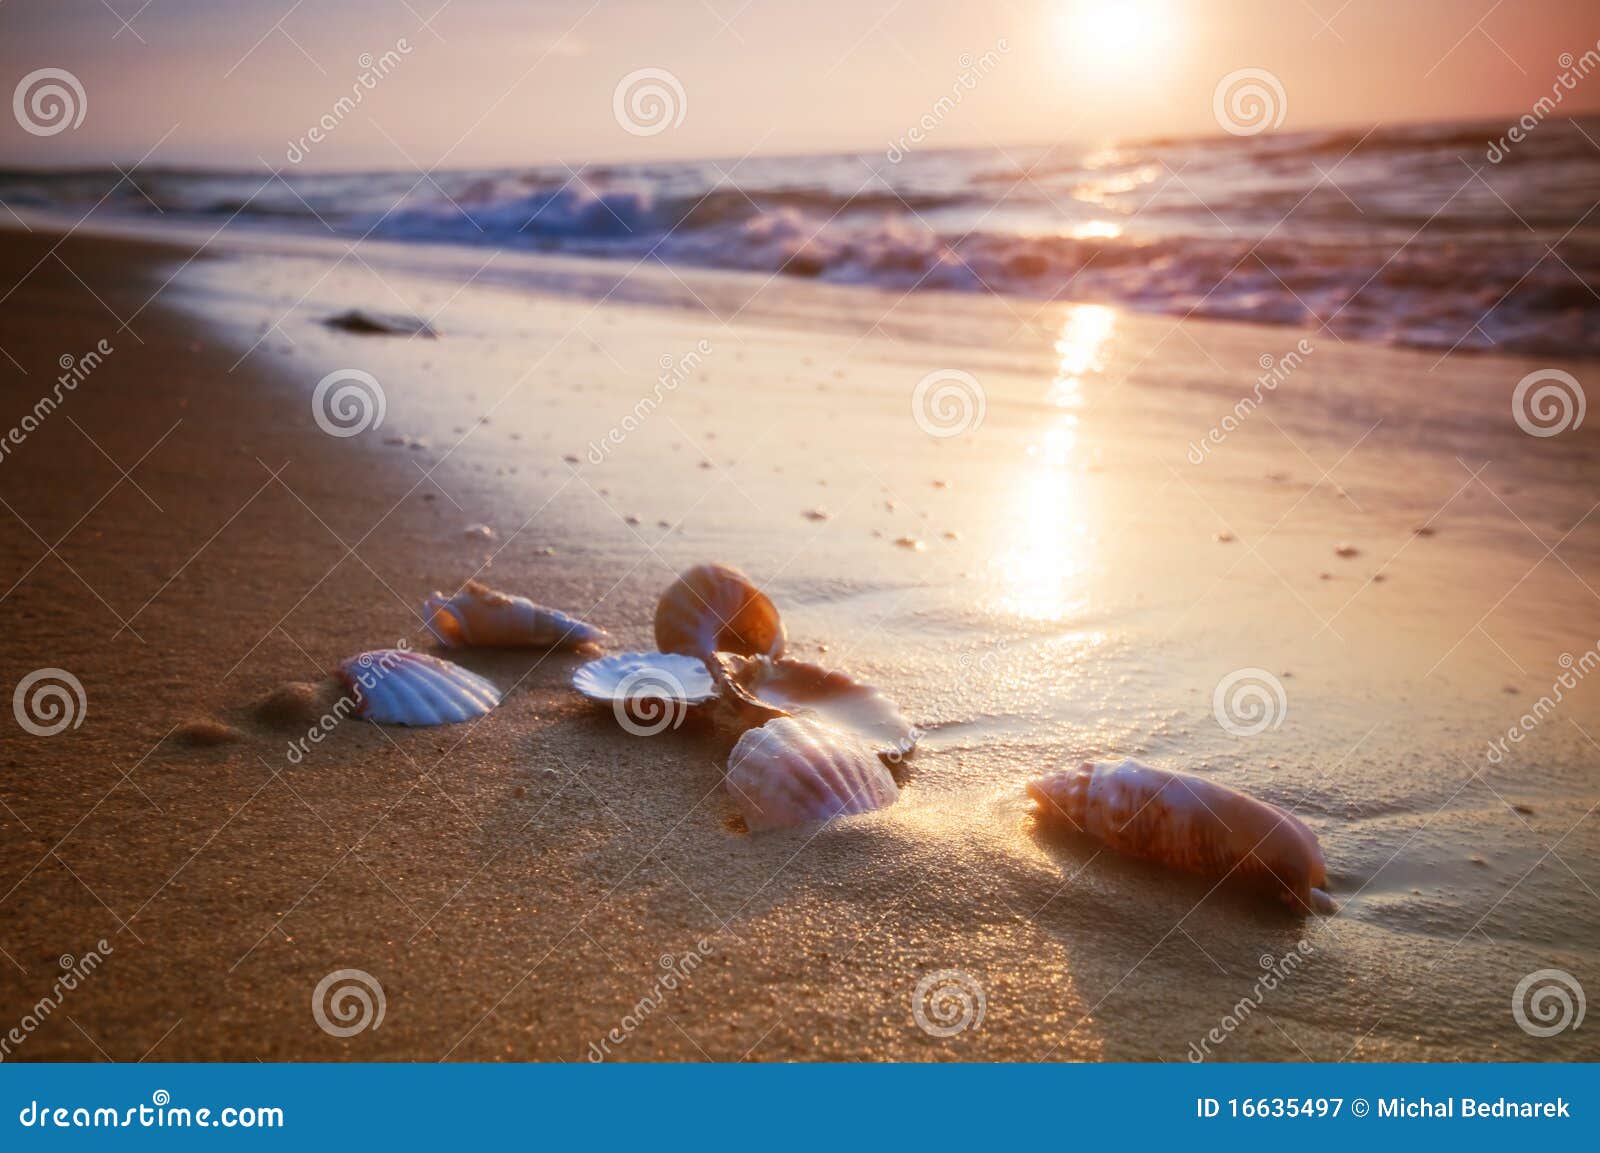 sea shells on sand